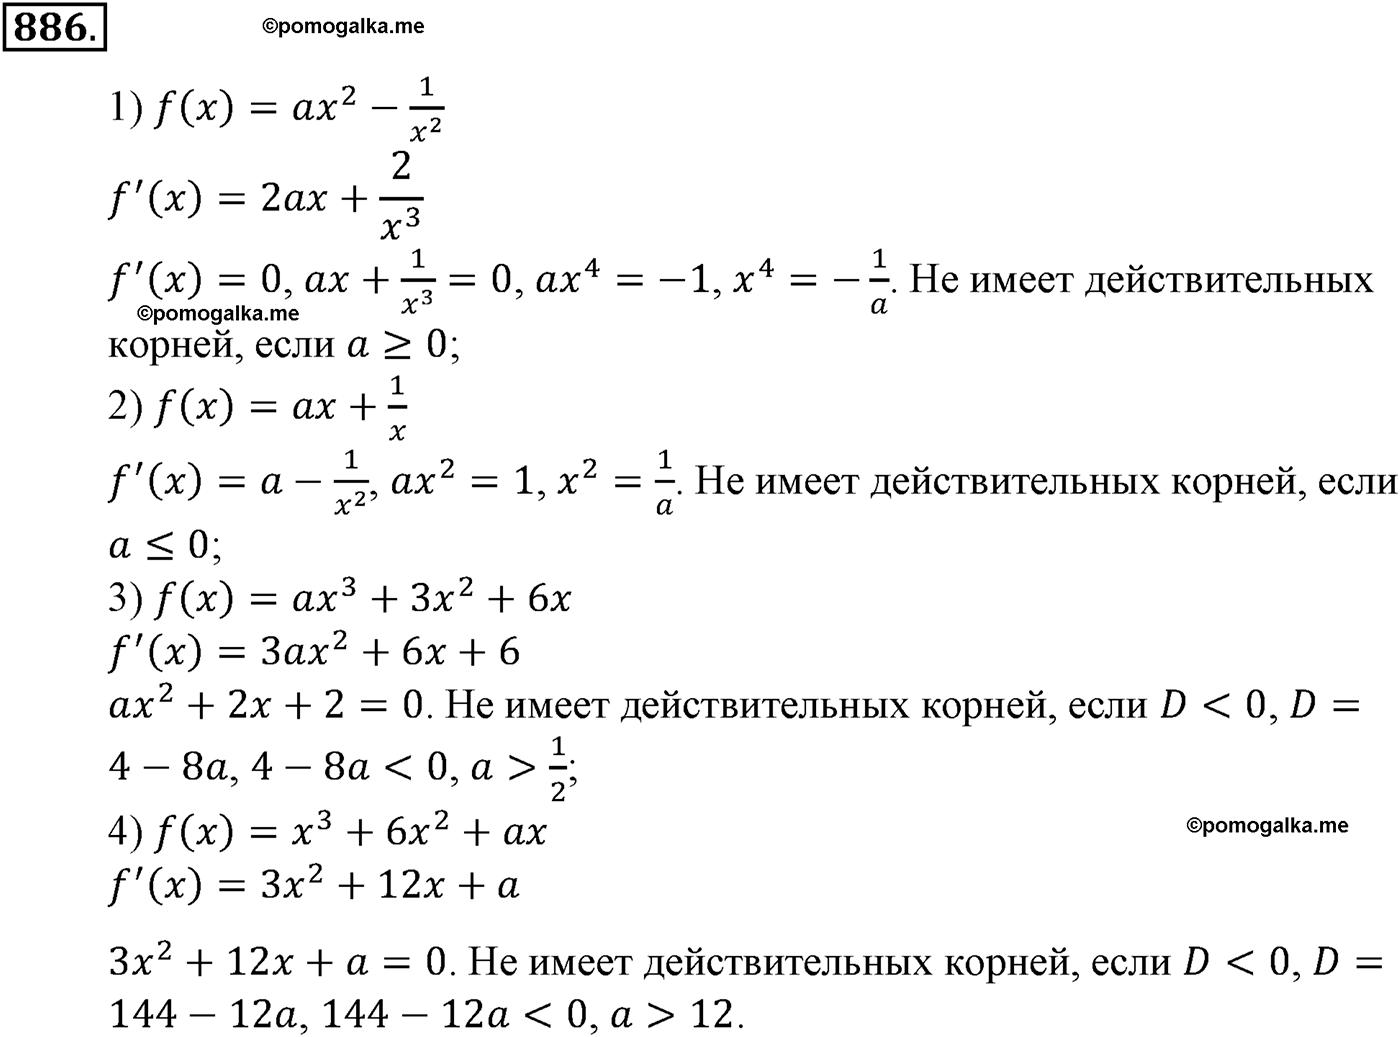 разбор задачи №886 по алгебре за 10-11 класс из учебника Алимова, Колягина